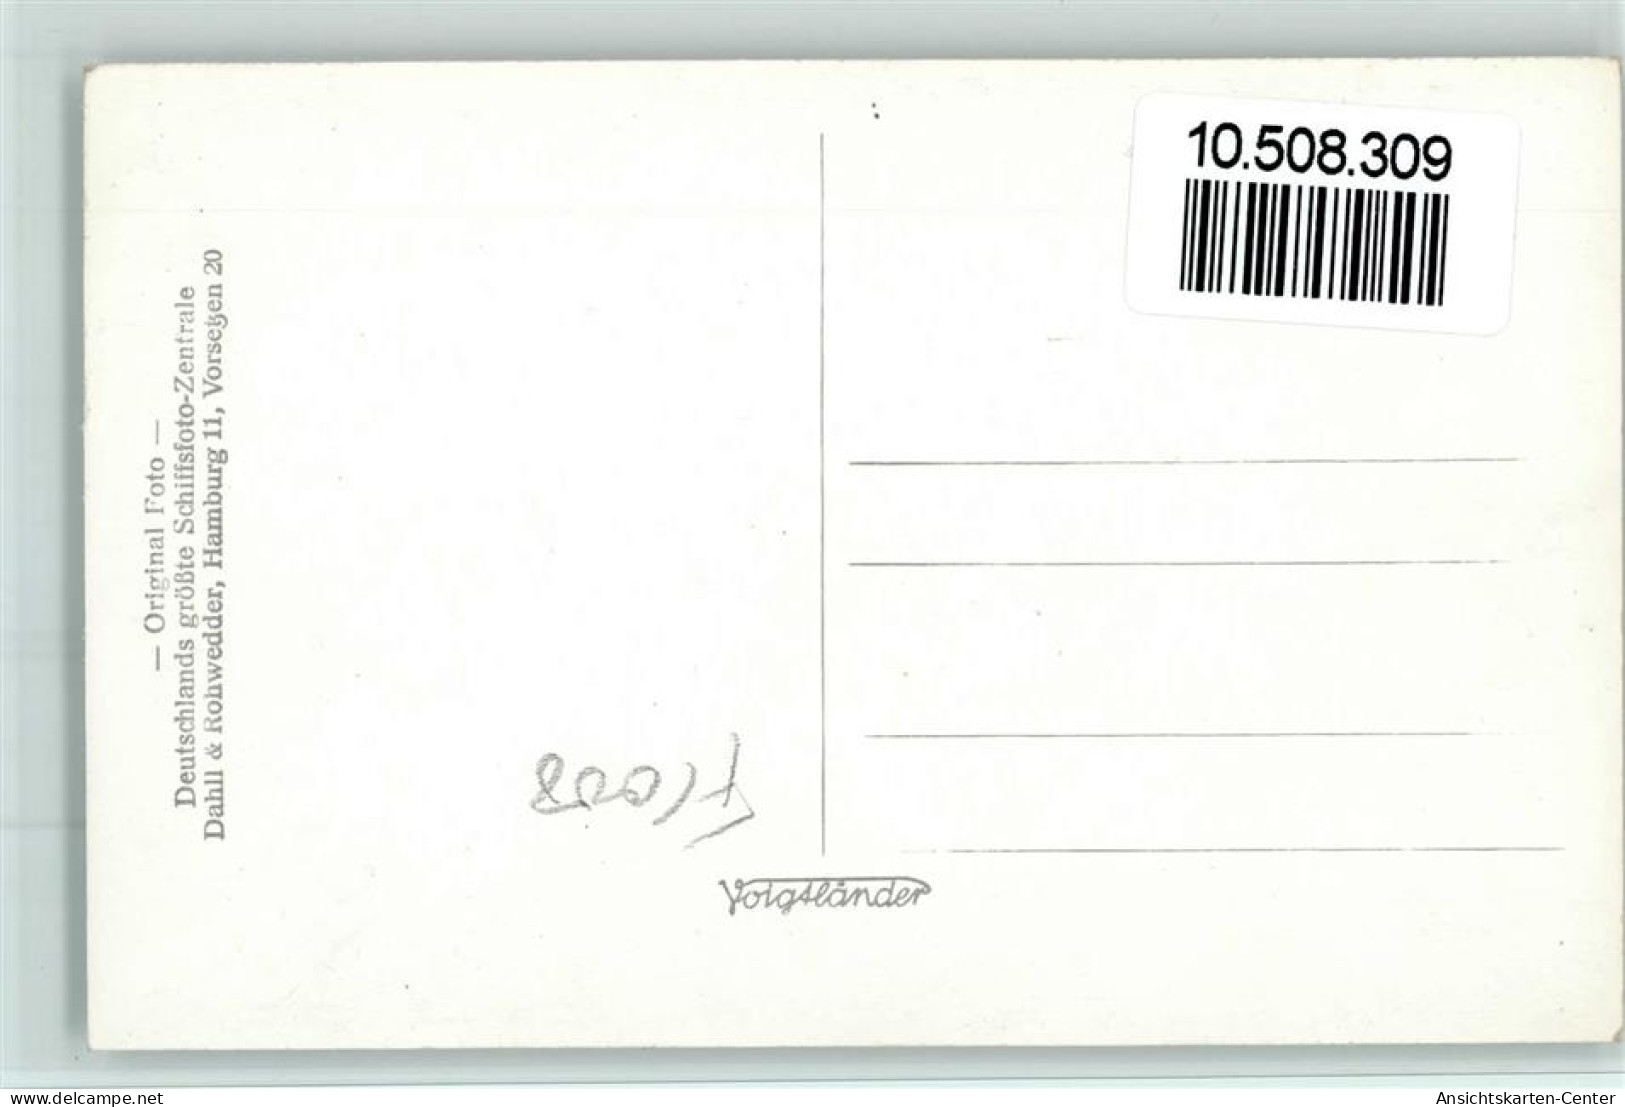 10508309 - Norddeutscher Lloyd Kronprinzessin Cecilie - Paquebots